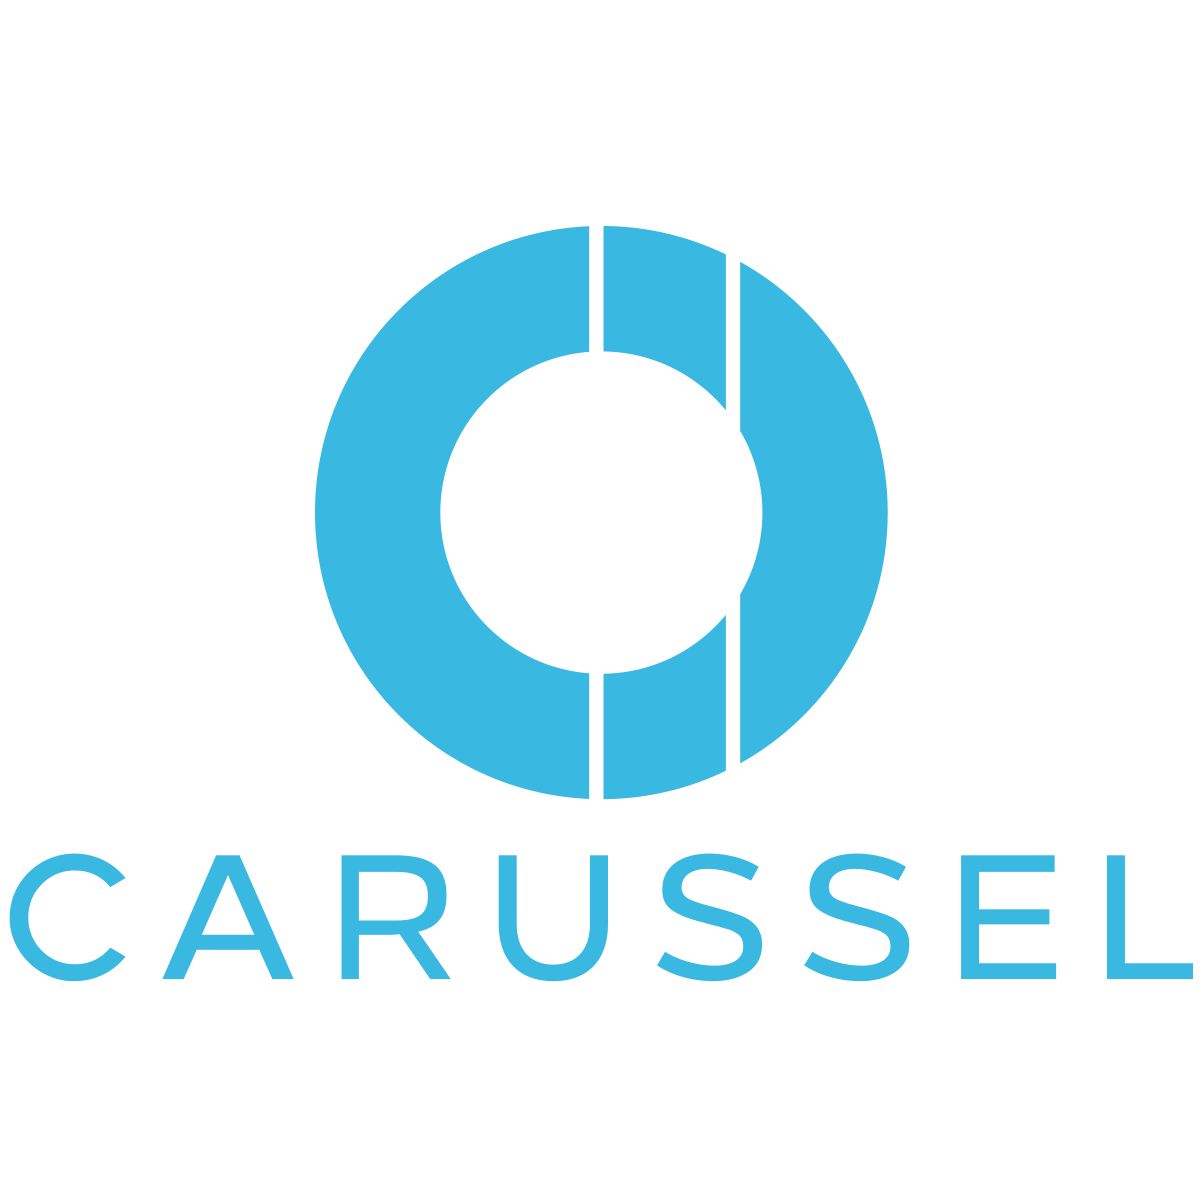 Carussel logo